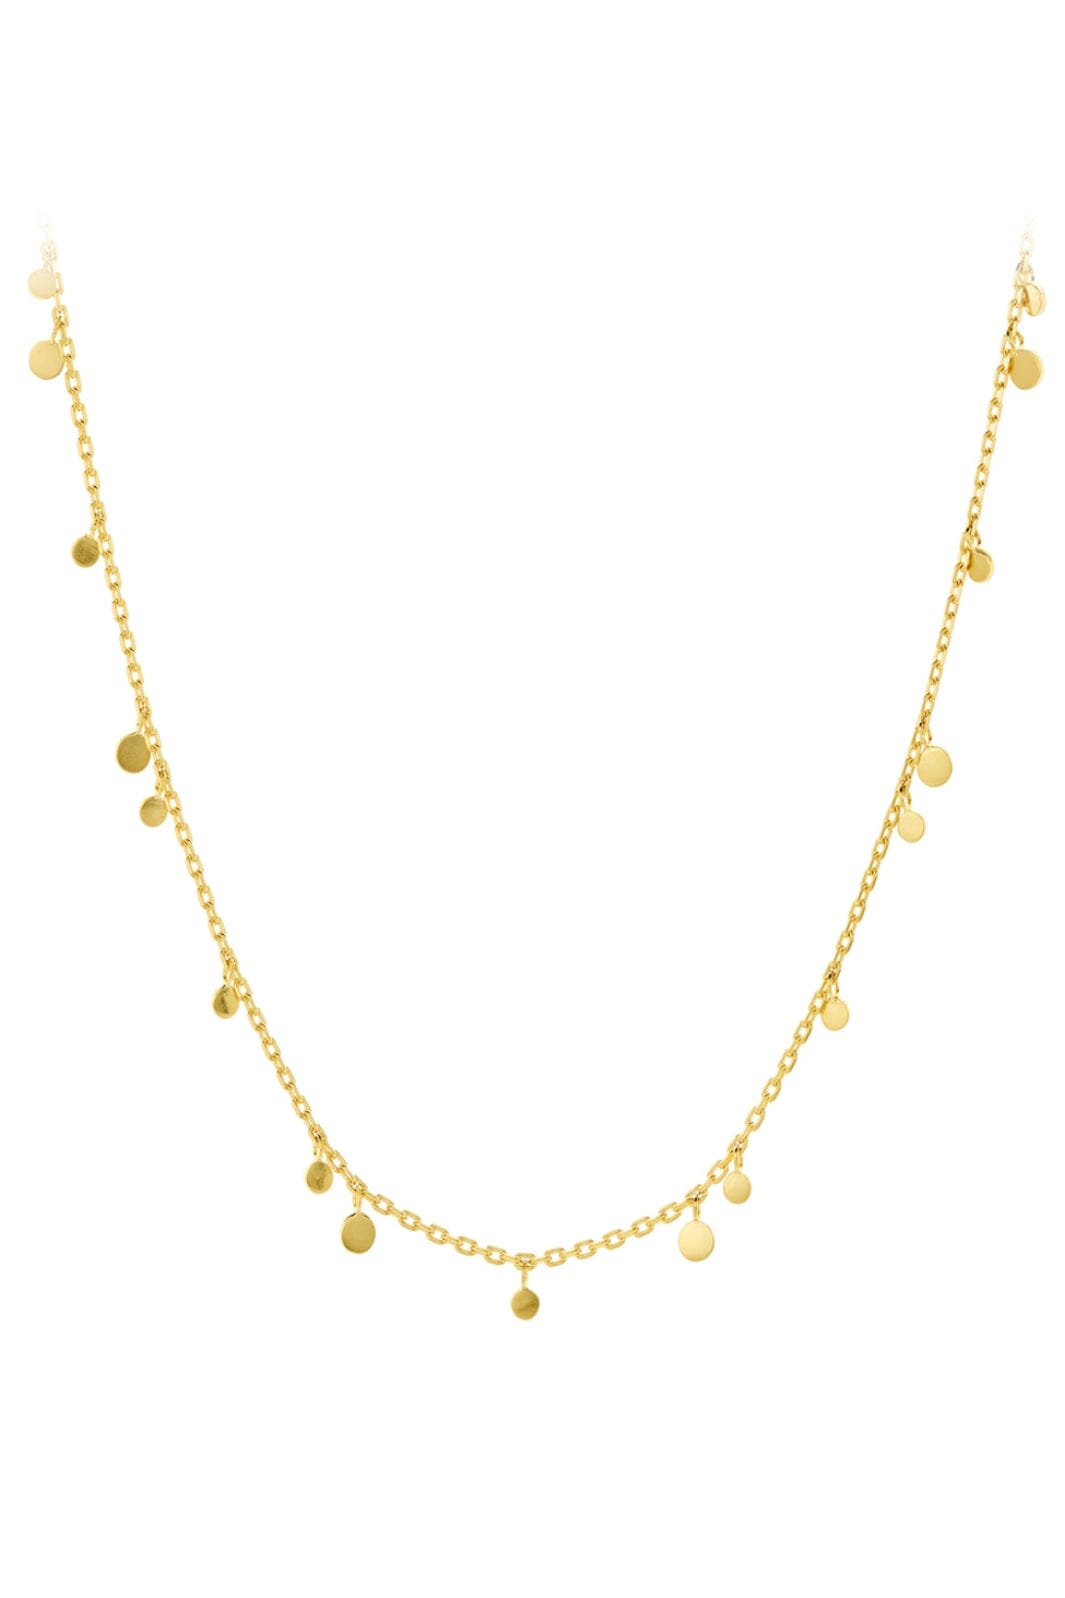 Pernille Corydon Jewellery - Glow Halskæder - Gold Plated Halskæder 